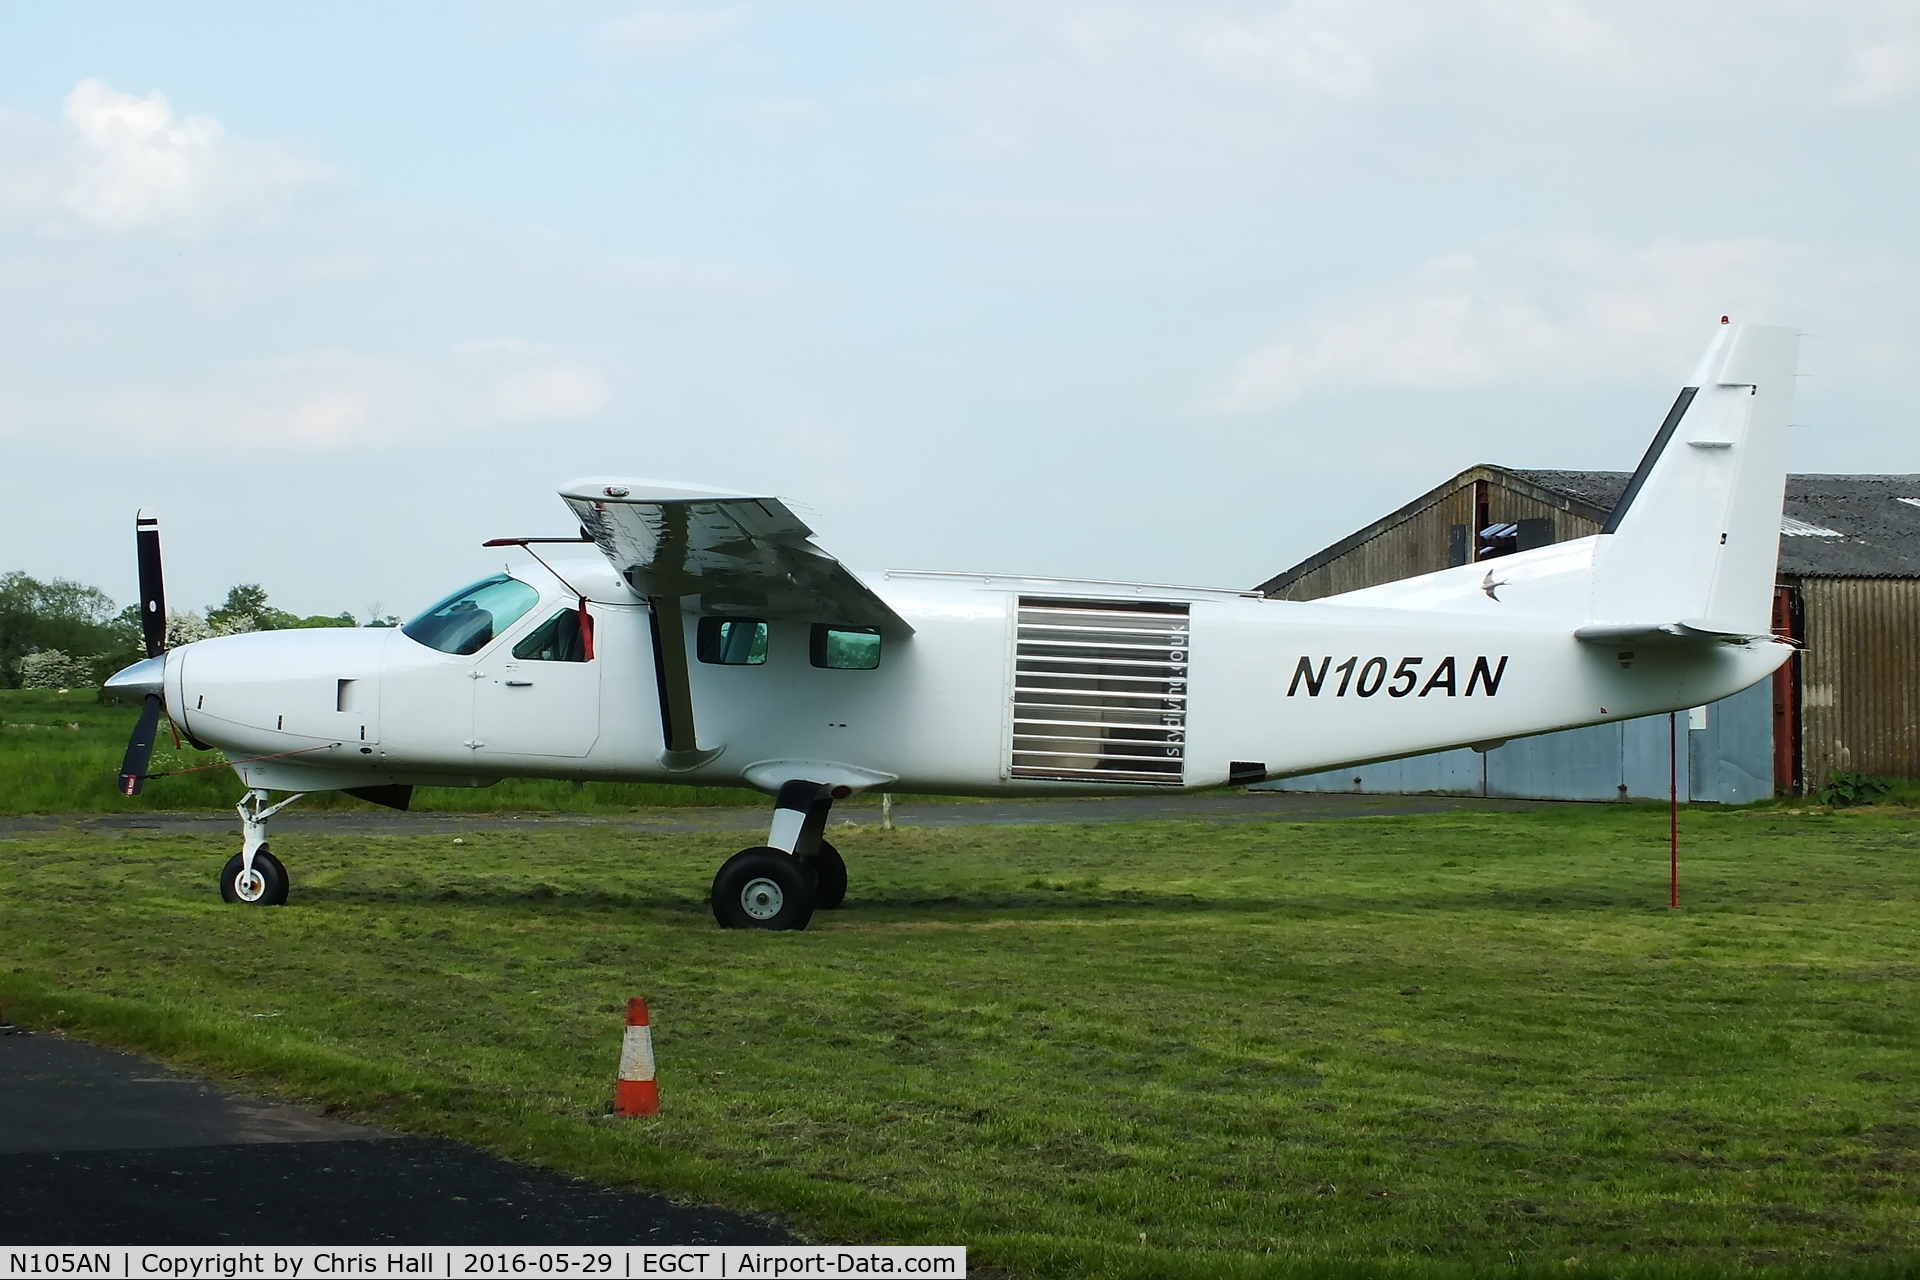 N105AN, 2002 Cessna 208B Grand Caravan C/N 208B0956, at Tilstock